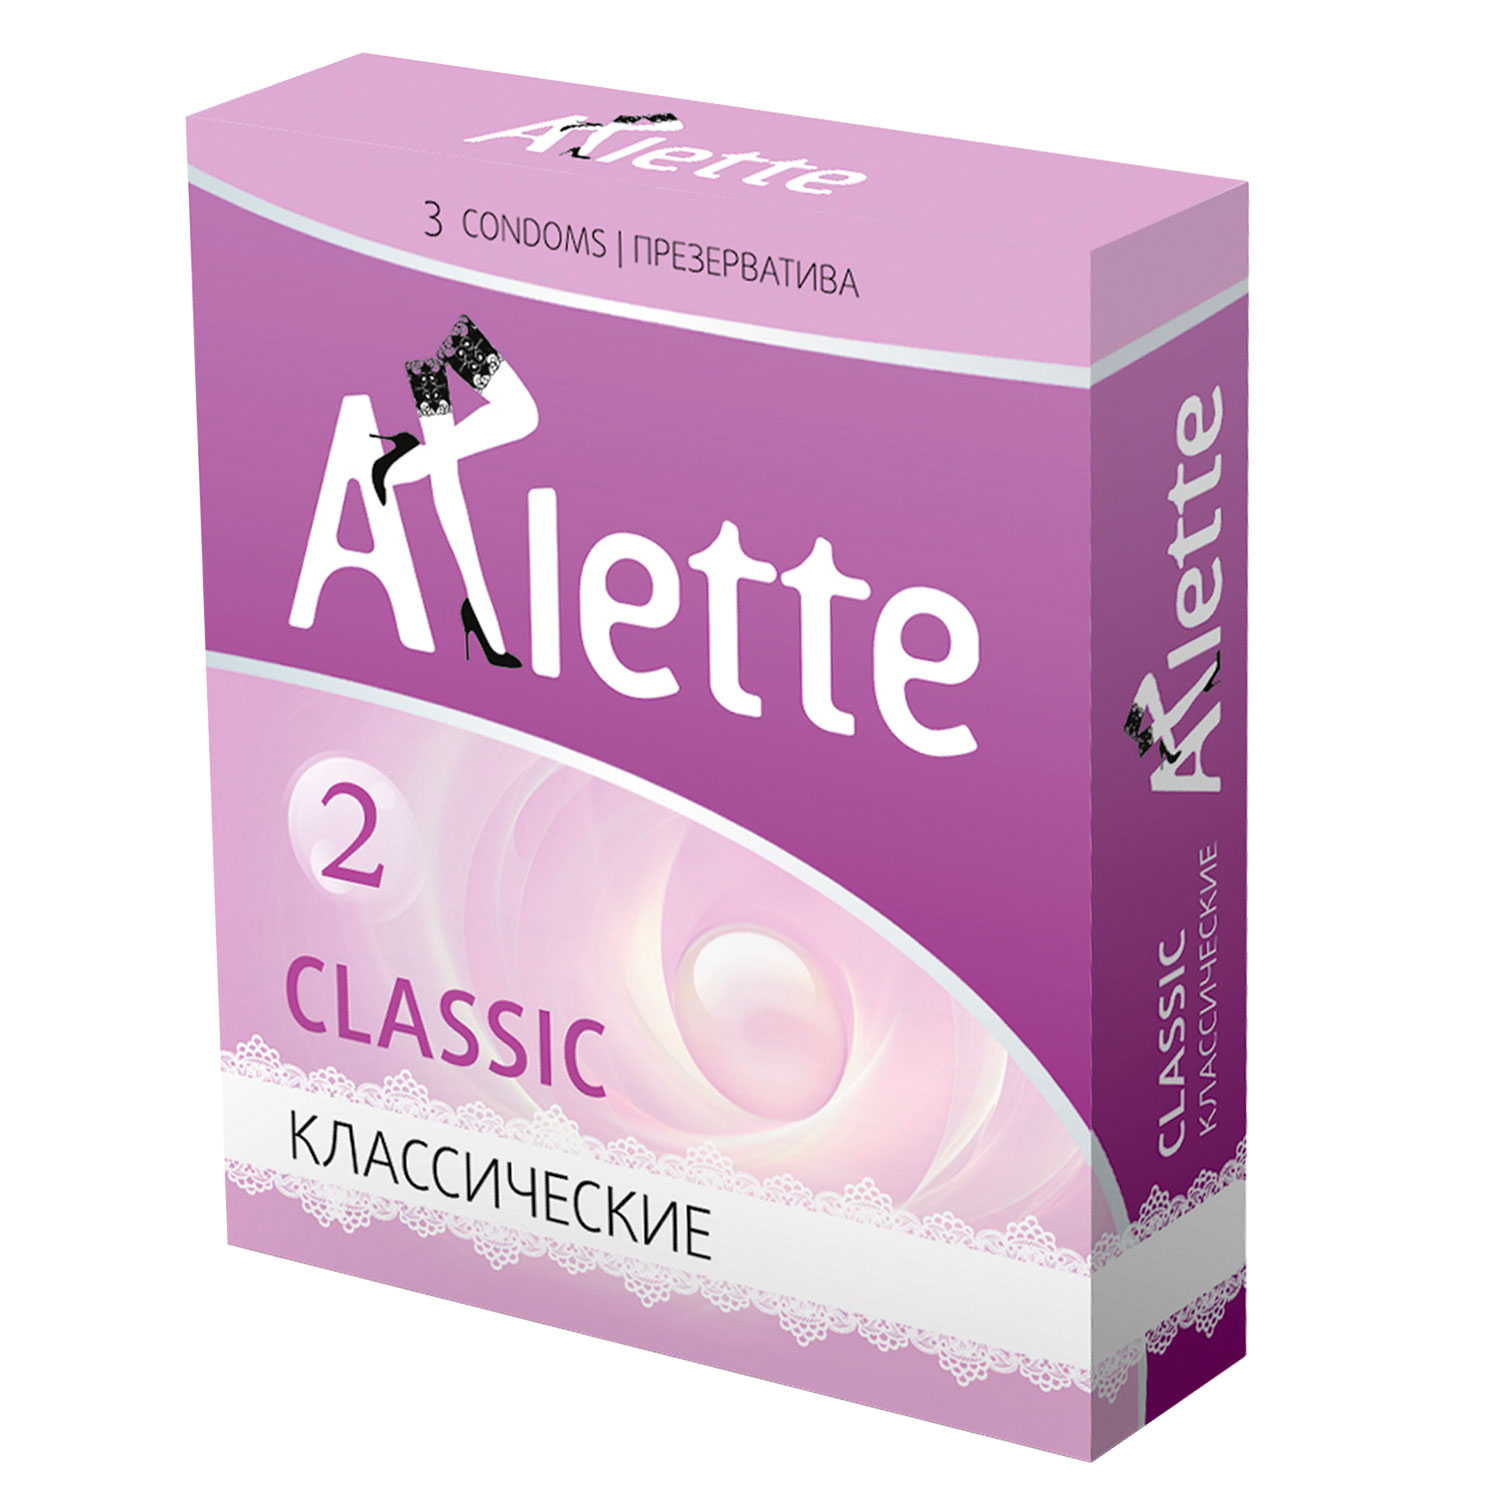 Презервативы Arlette Classic классические, 3 шт.